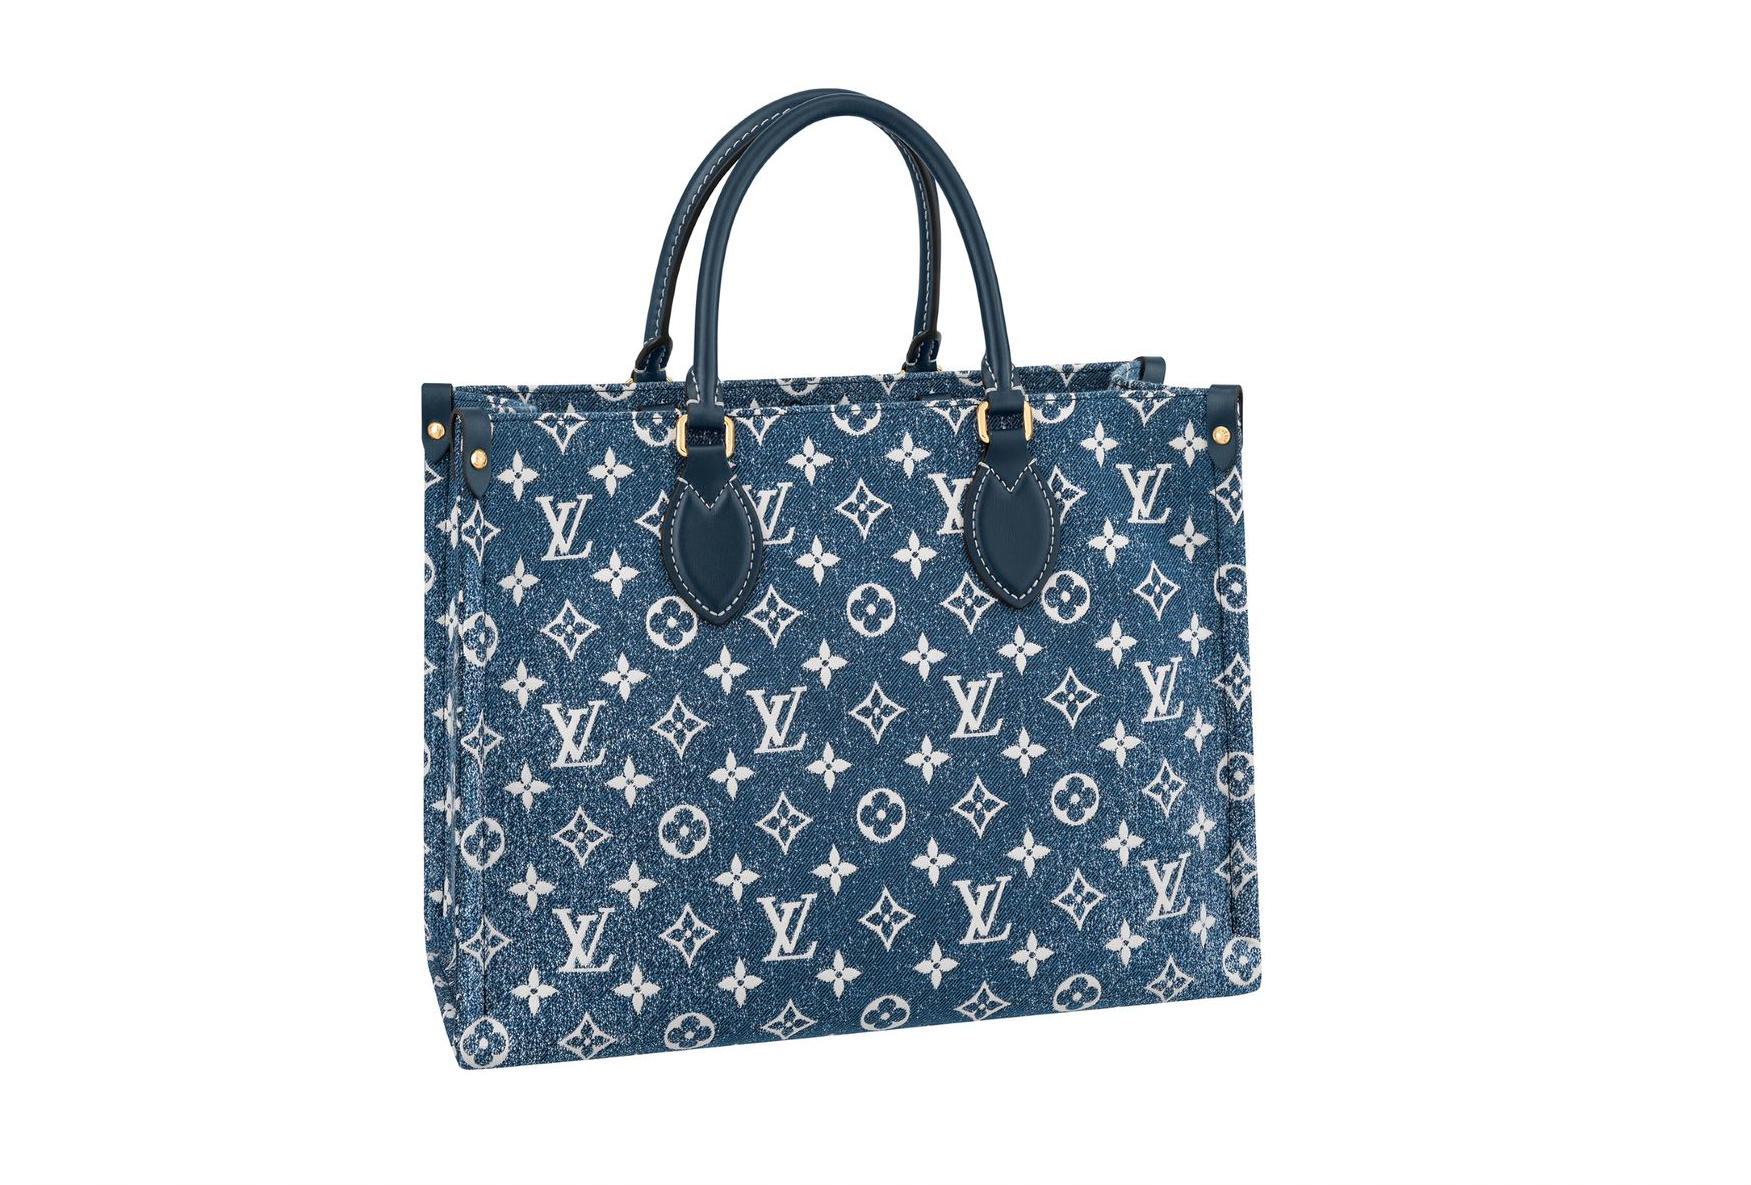 Tết Âm lịch cận kề, Louis Vuitton đánh úp giới mộ điệu khi thay áo 4 chiếc túi đình đám - Ảnh 7.